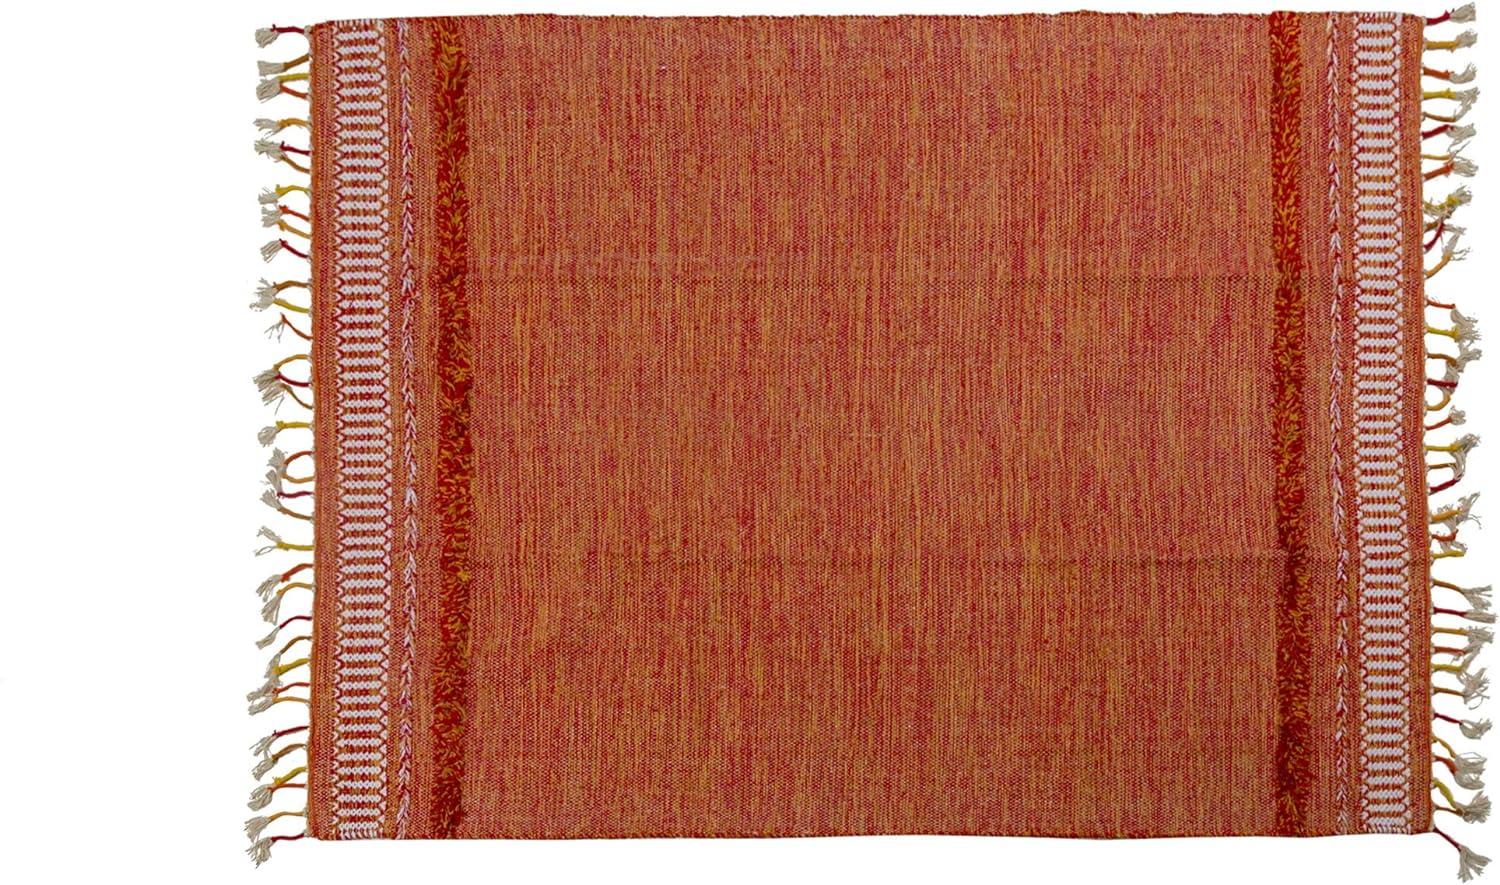 Dmora Moderner Boston-Teppich im Kelim-Stil, 100% Baumwolle, orange, 170x110cm Bild 1